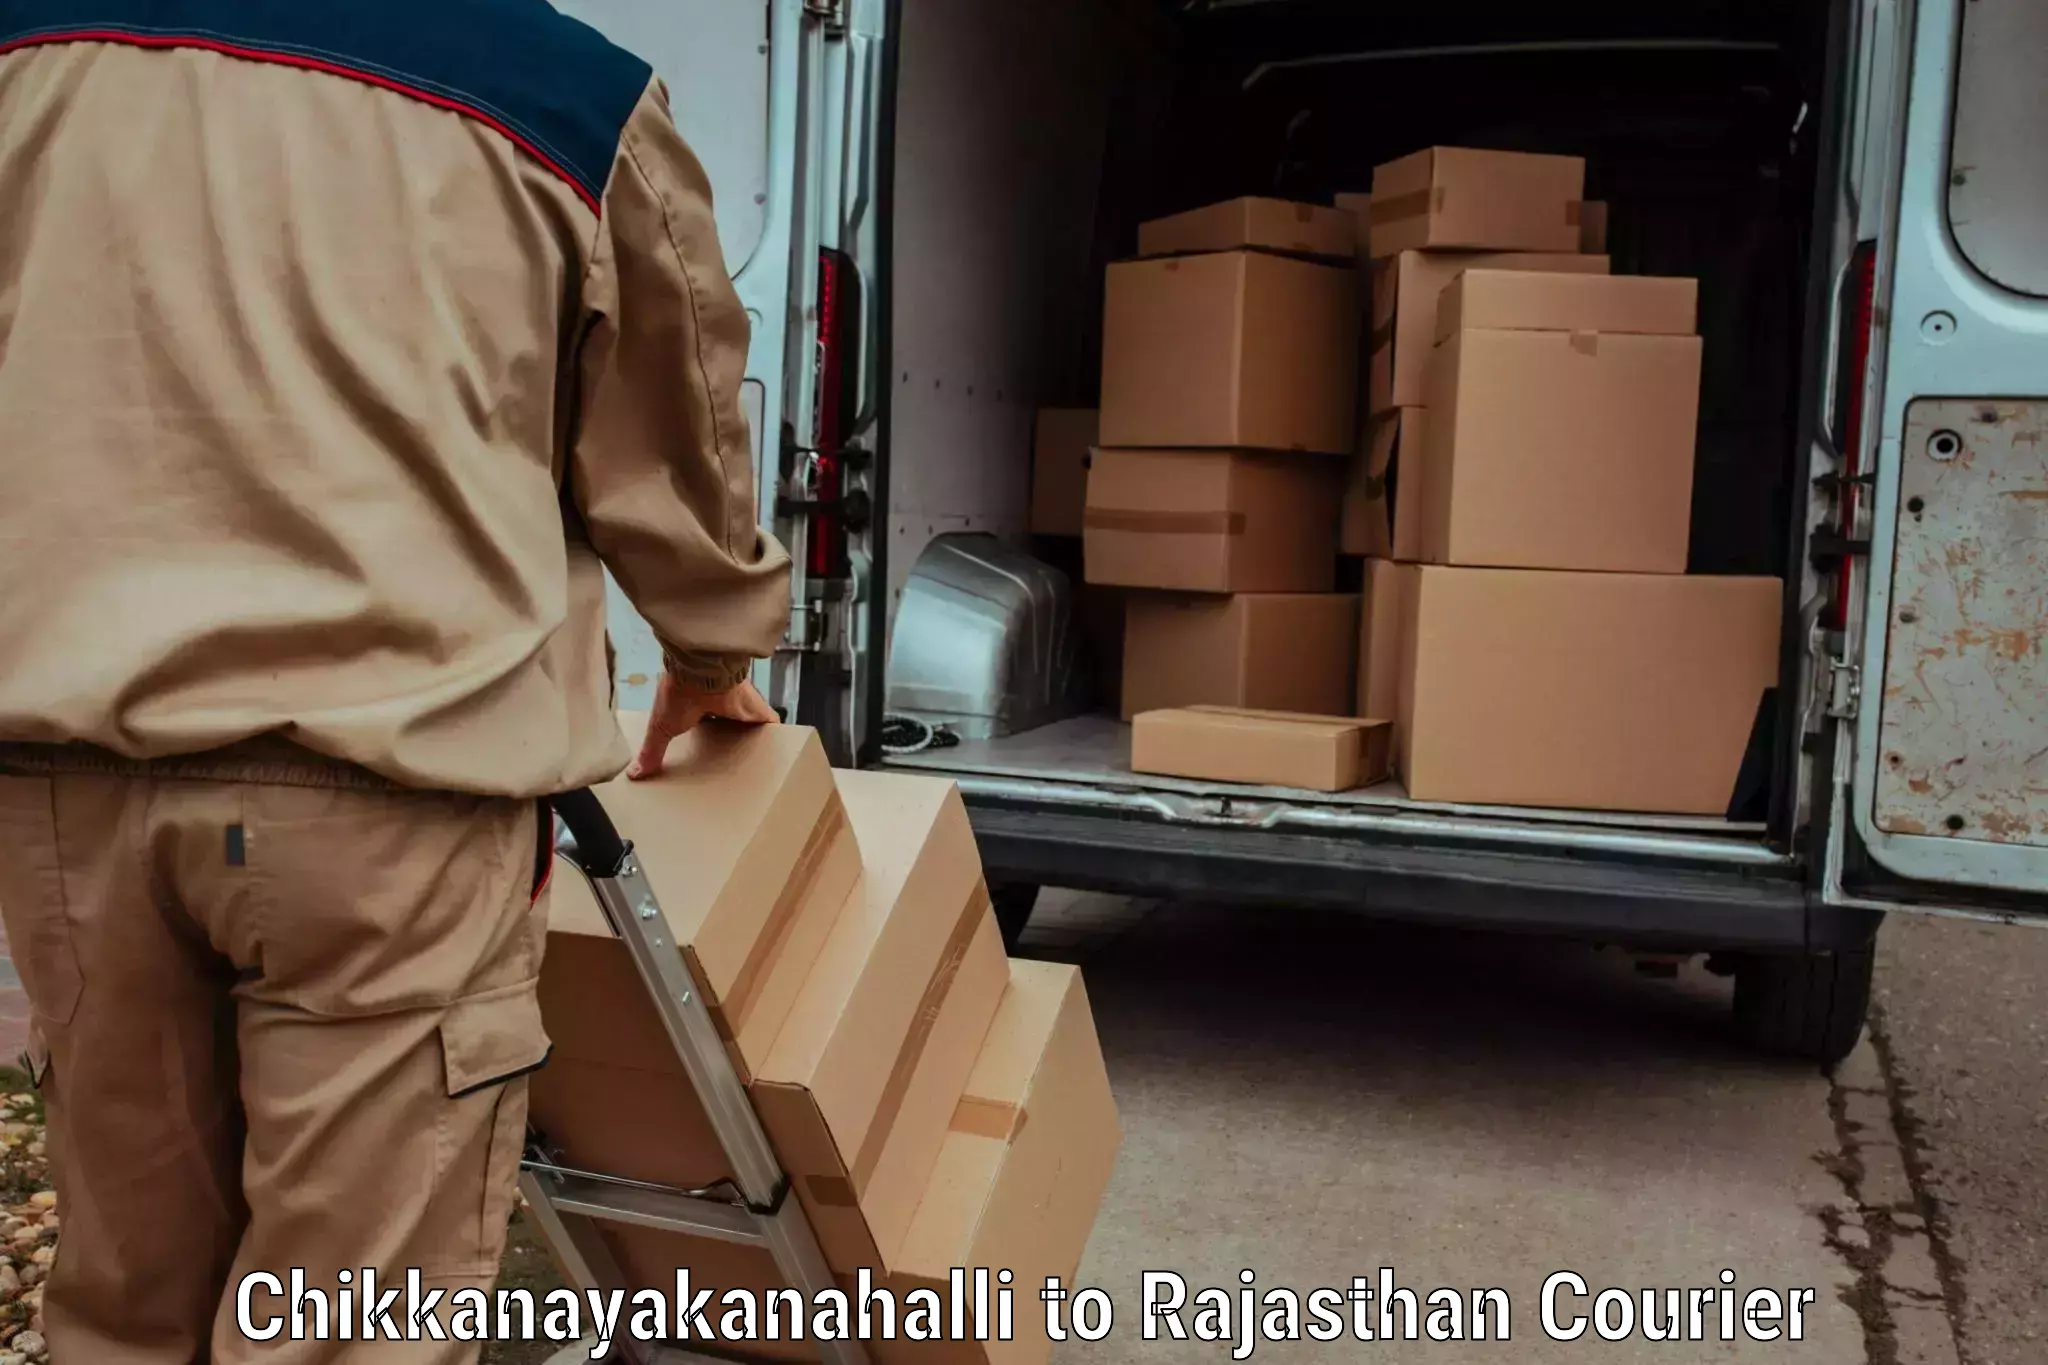 Holiday shipping services Chikkanayakanahalli to Raila